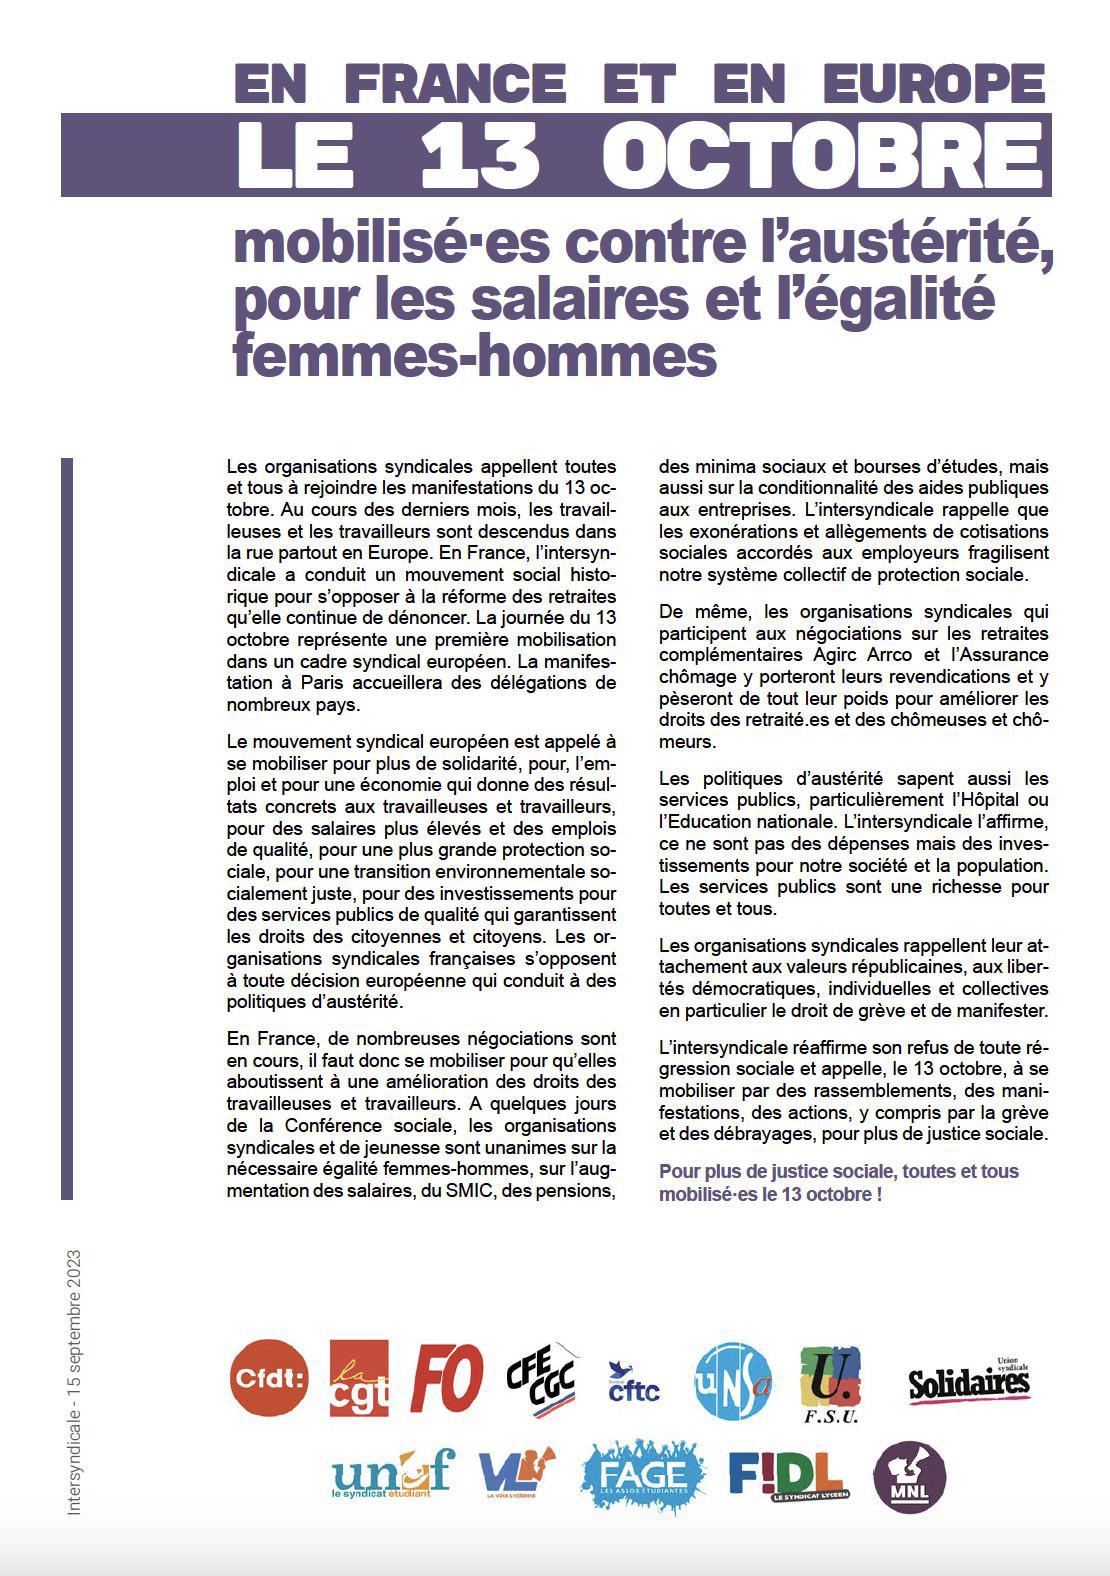 Le 13 octobre, la France et l'Europe mobilisés contre l'austérité, pour les salaires et l'égalité femmes-hommes